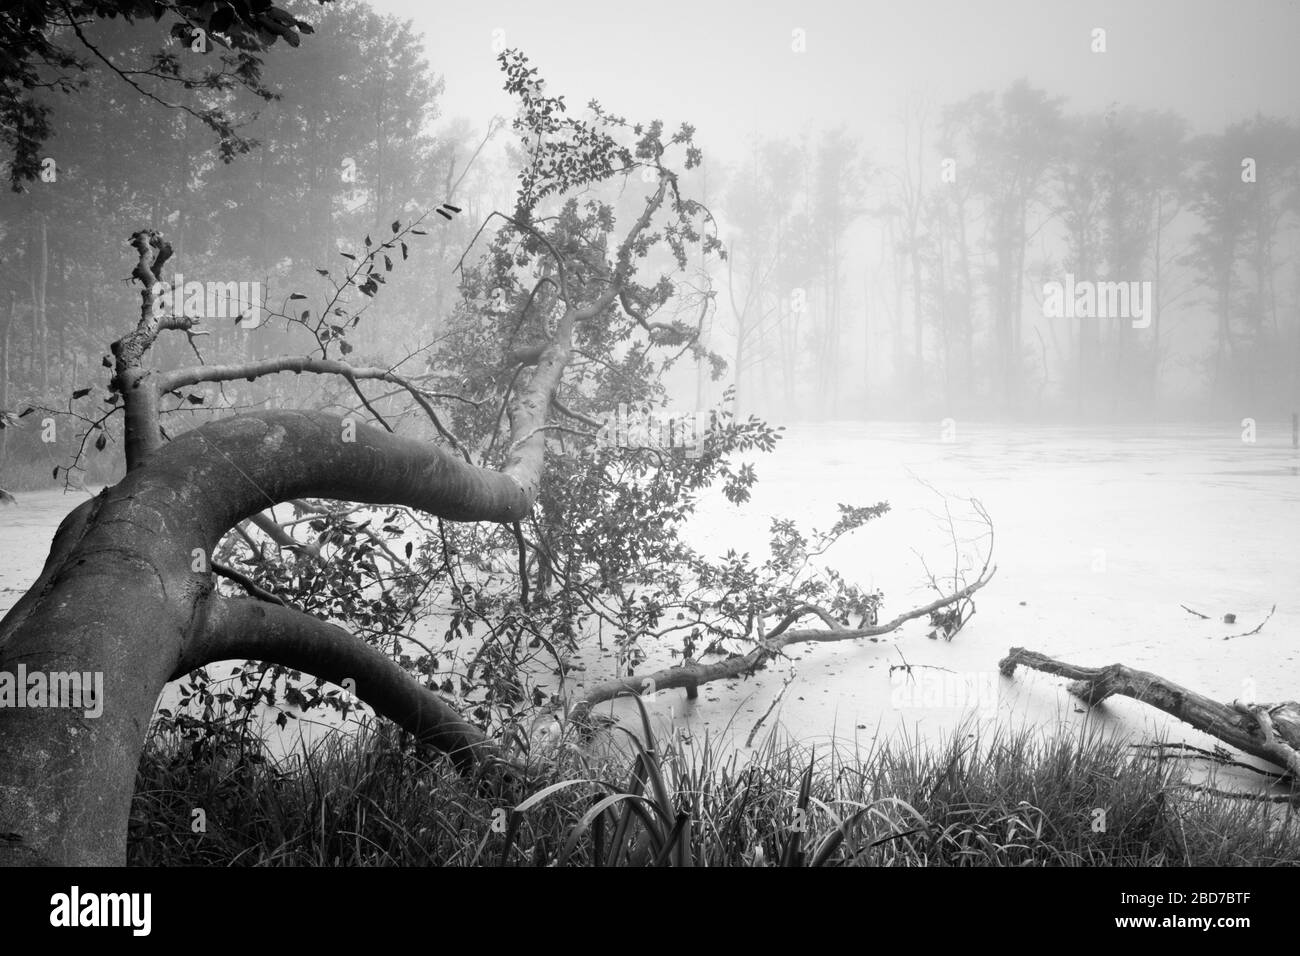 Sumpf See im Nationalpark Jasmund mit Nebel, unberührter Natur, Baumstamm im Wasser, Insel Rügen, Mecklenburg-Vorpommern Stockfoto